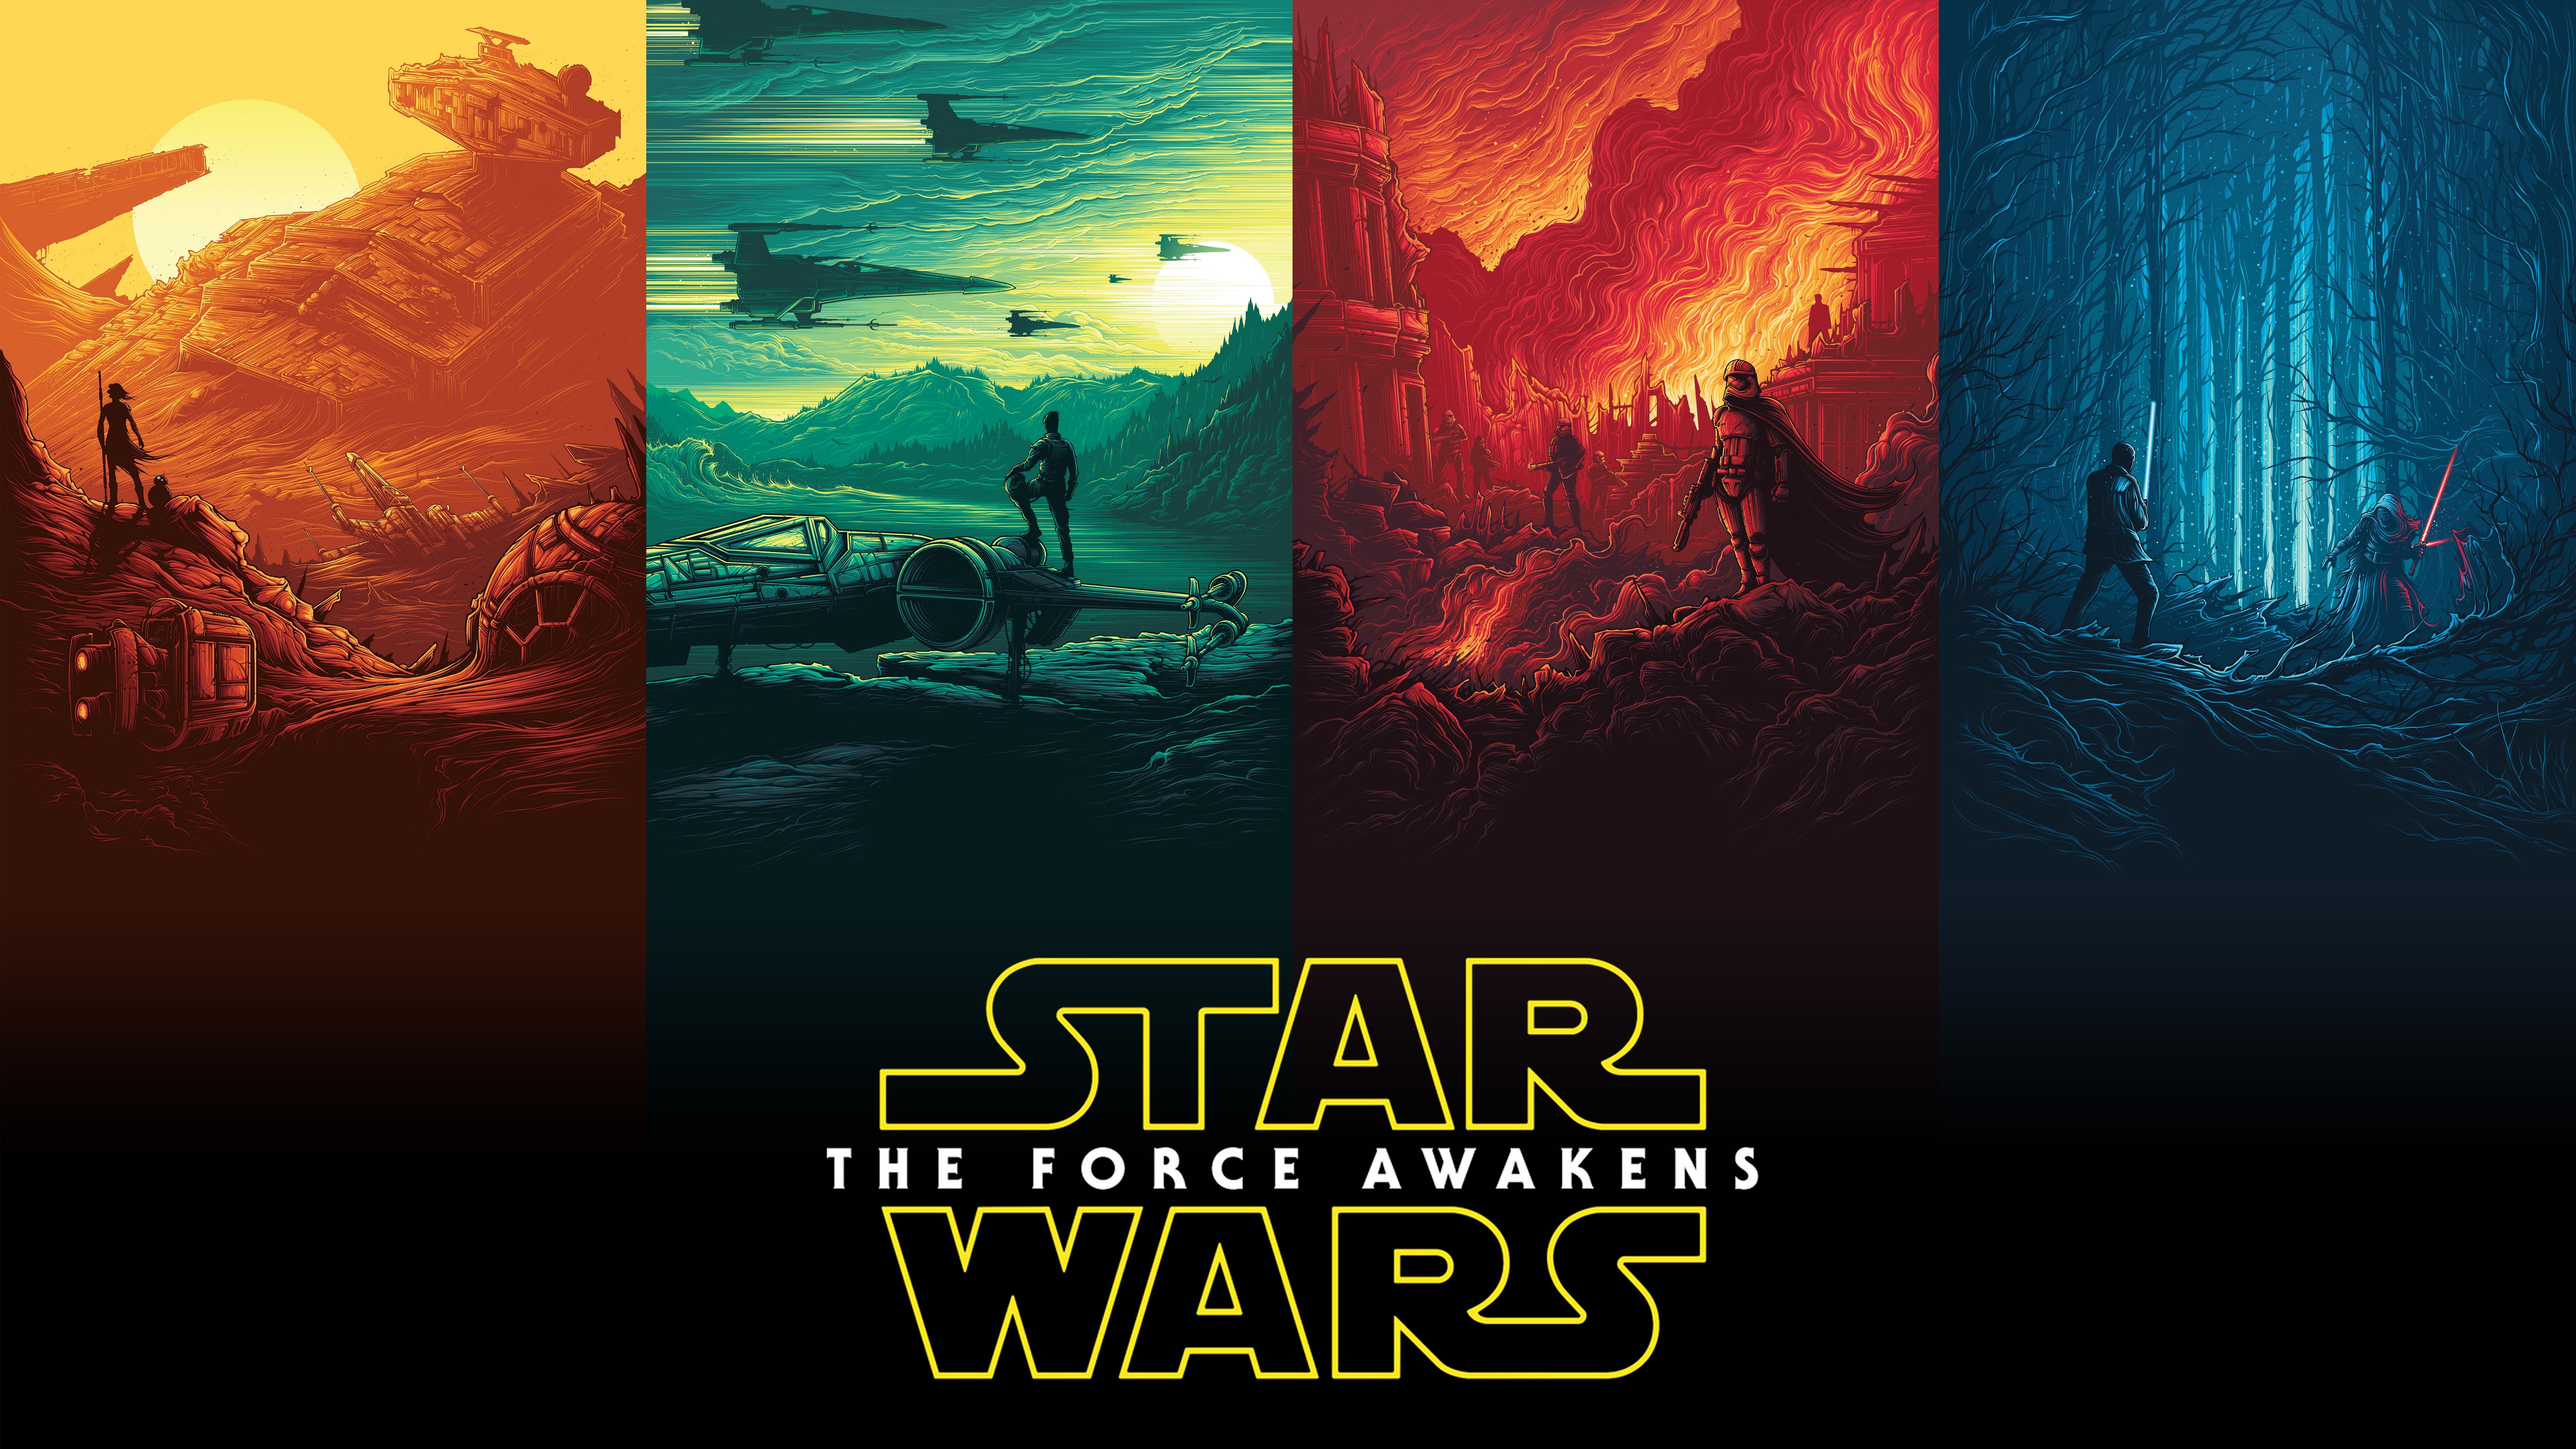 Star Wars Wallpaper Free Star Wars Background